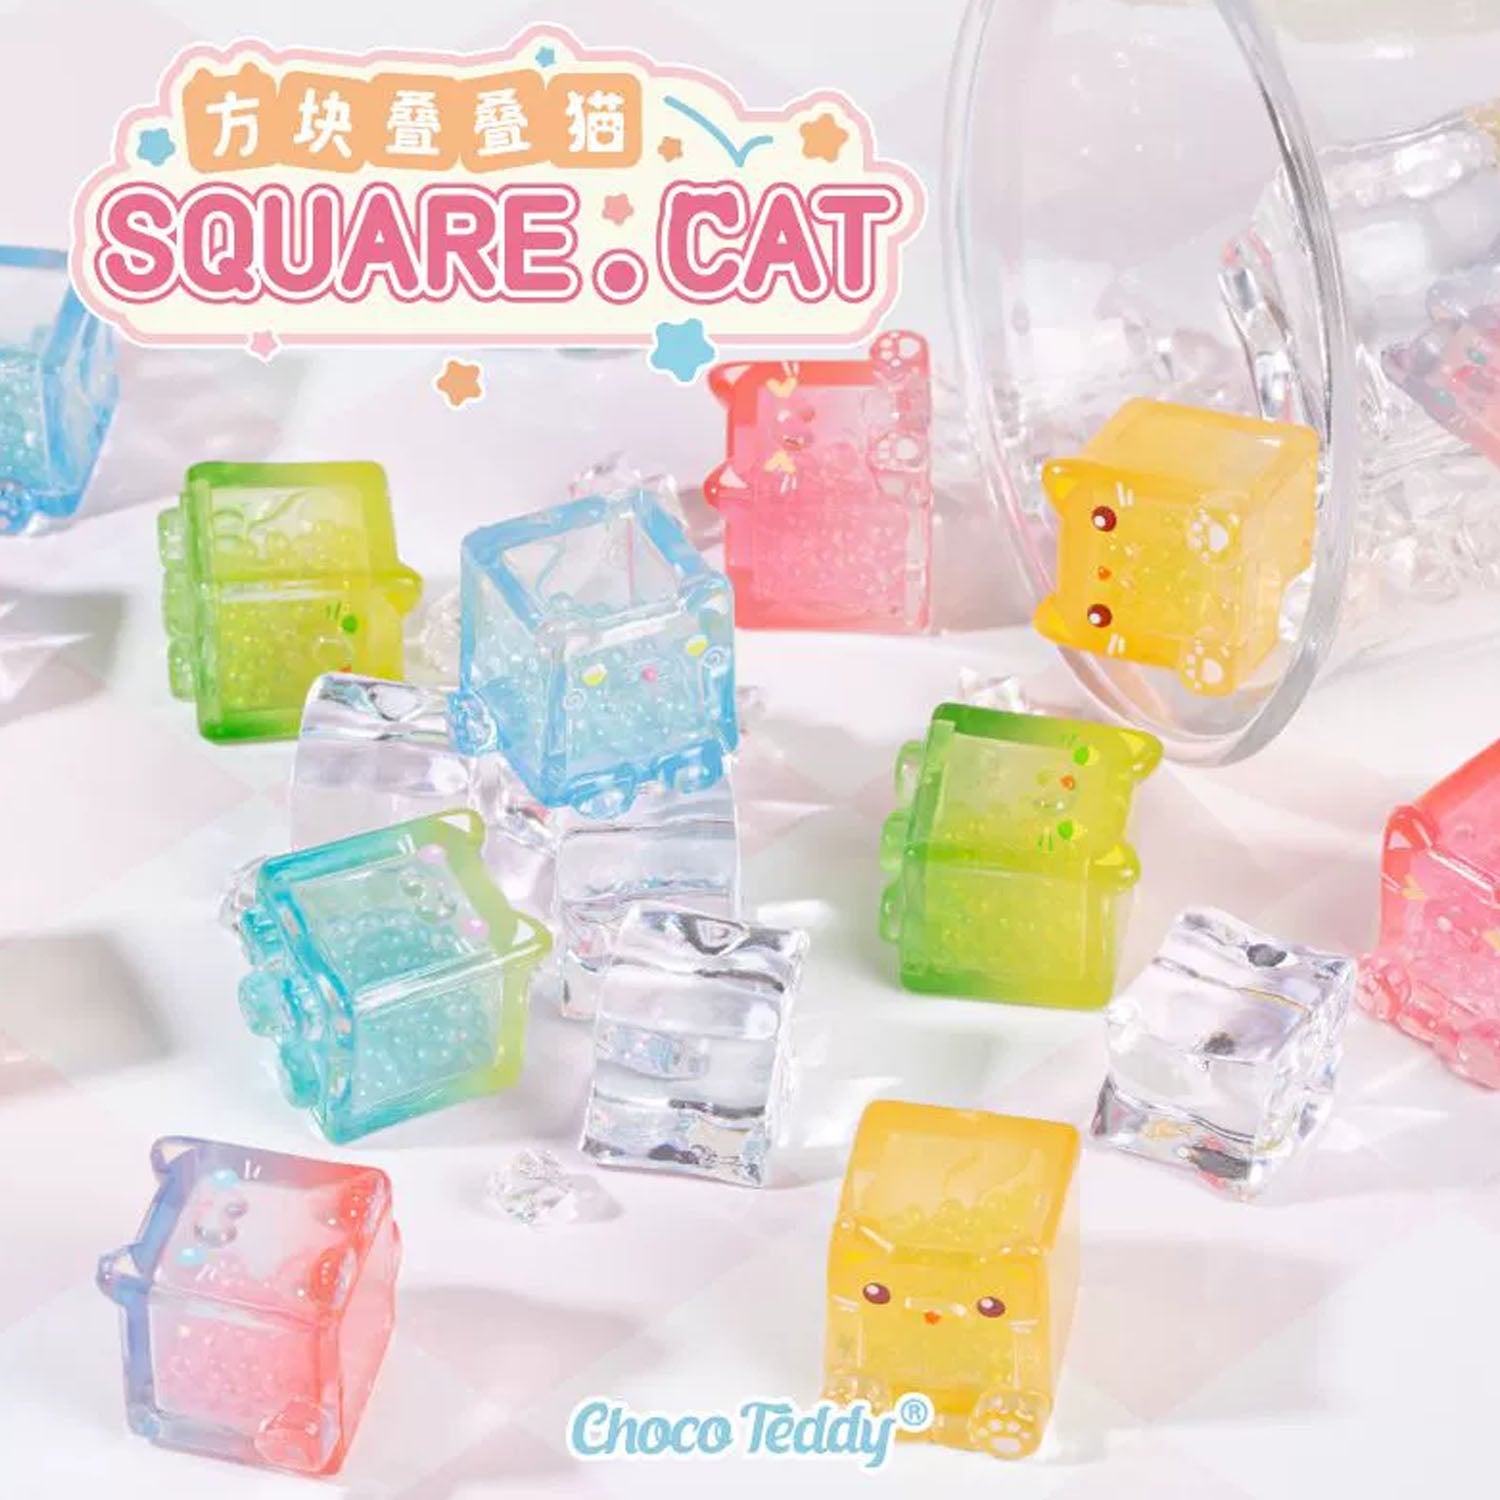 Square Cat Bean Series Blind Bag